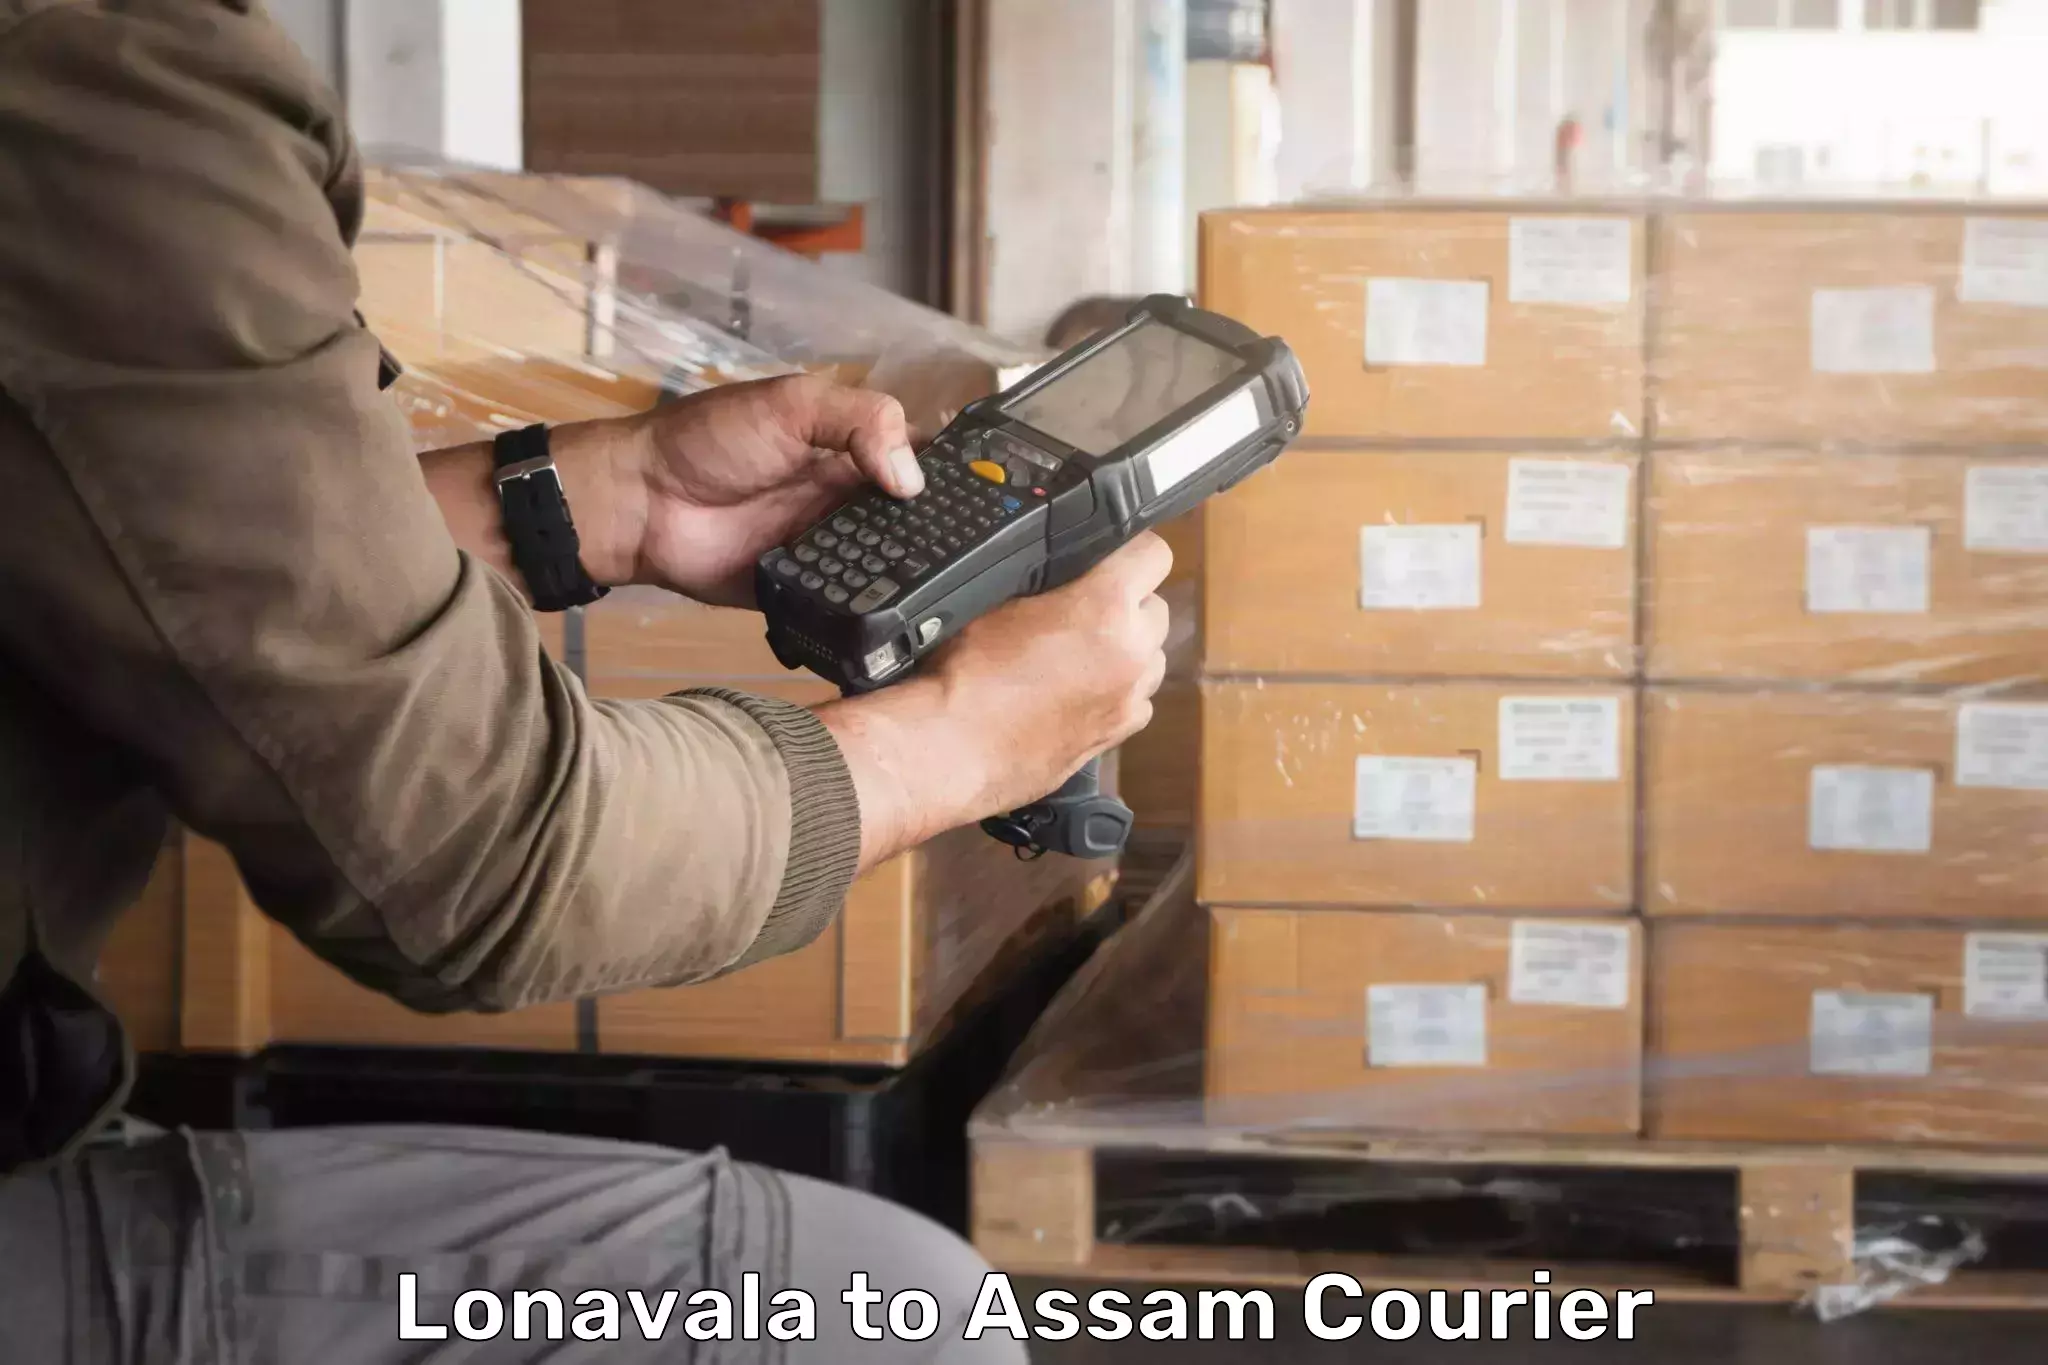 High-priority parcel service Lonavala to Banderdewa